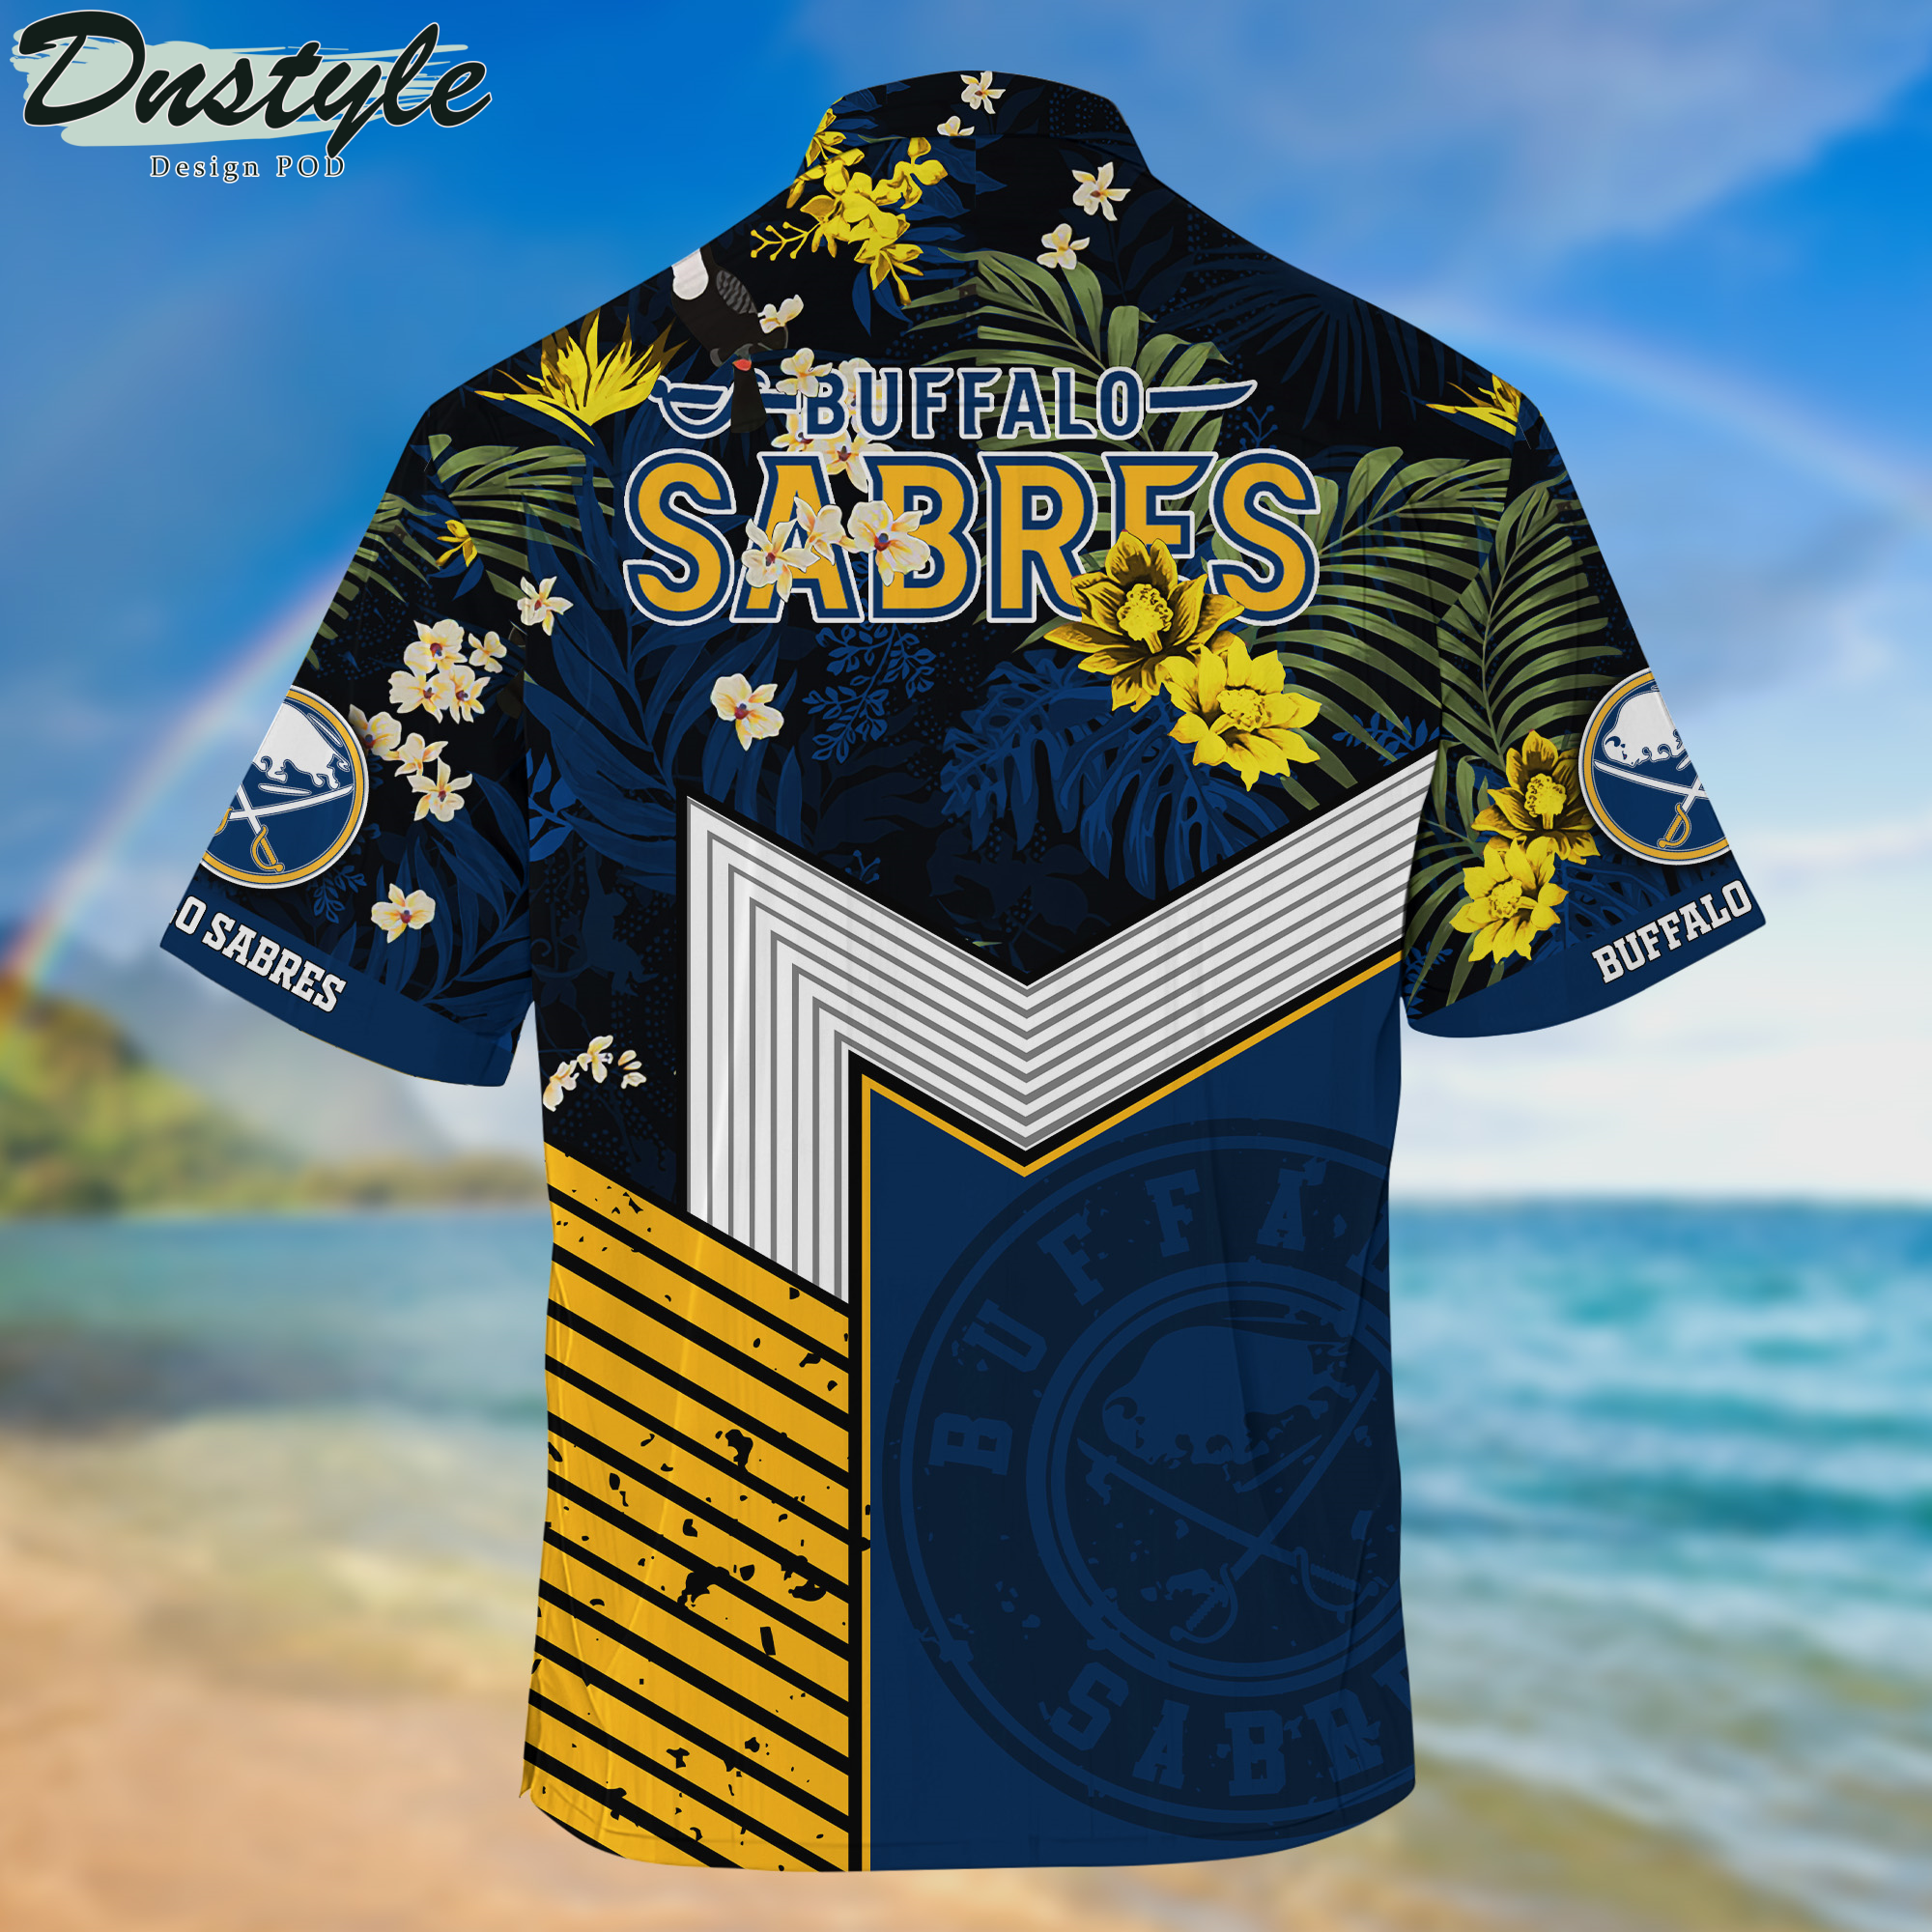 Buffalo Sabres Hawaii Shirt And Shorts New Collection